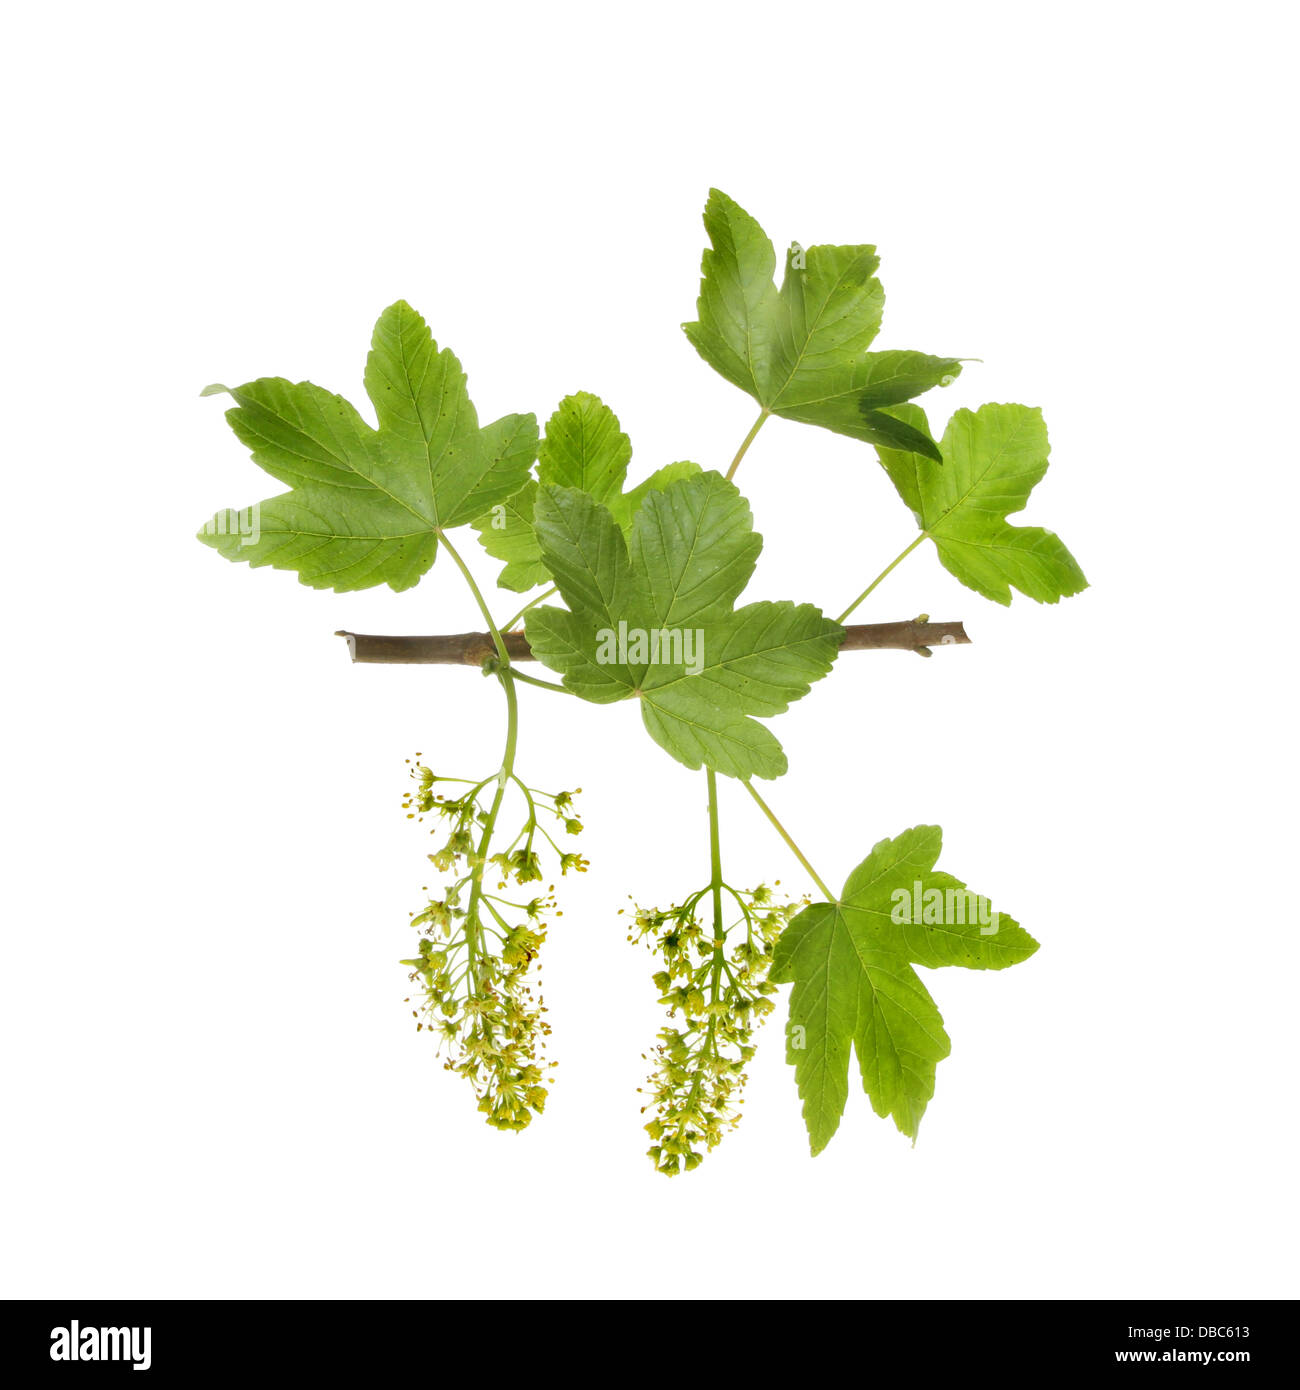 Sycamore, Acer pseudoplatanus, hojas y flores aisladas contra un blanco Foto de stock